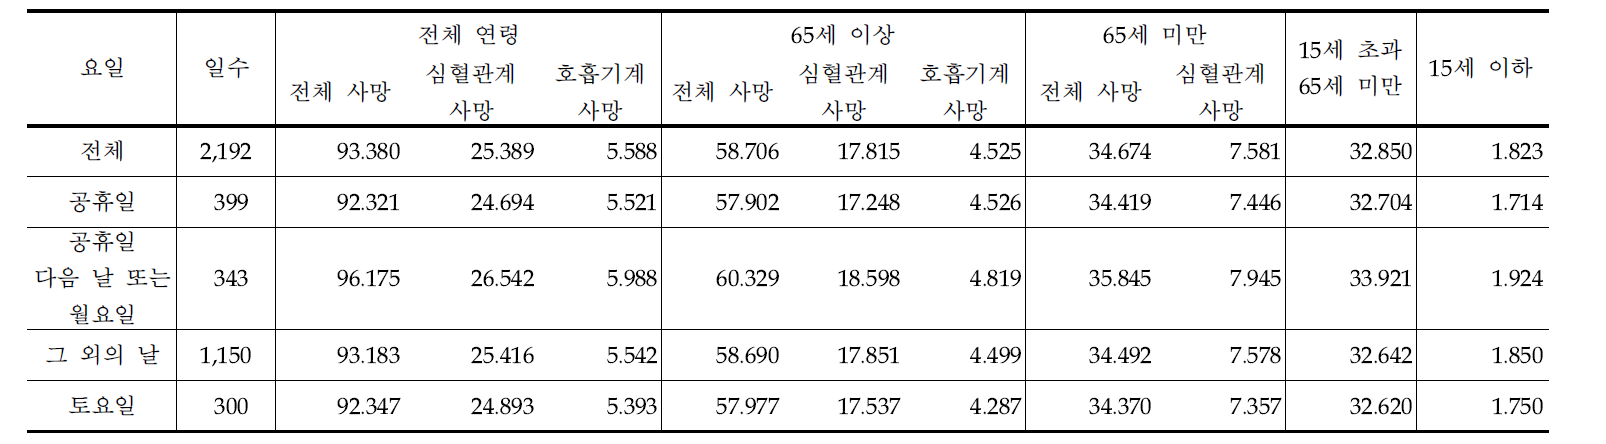 서울지역의 요일별 일별 사망자수의 평균